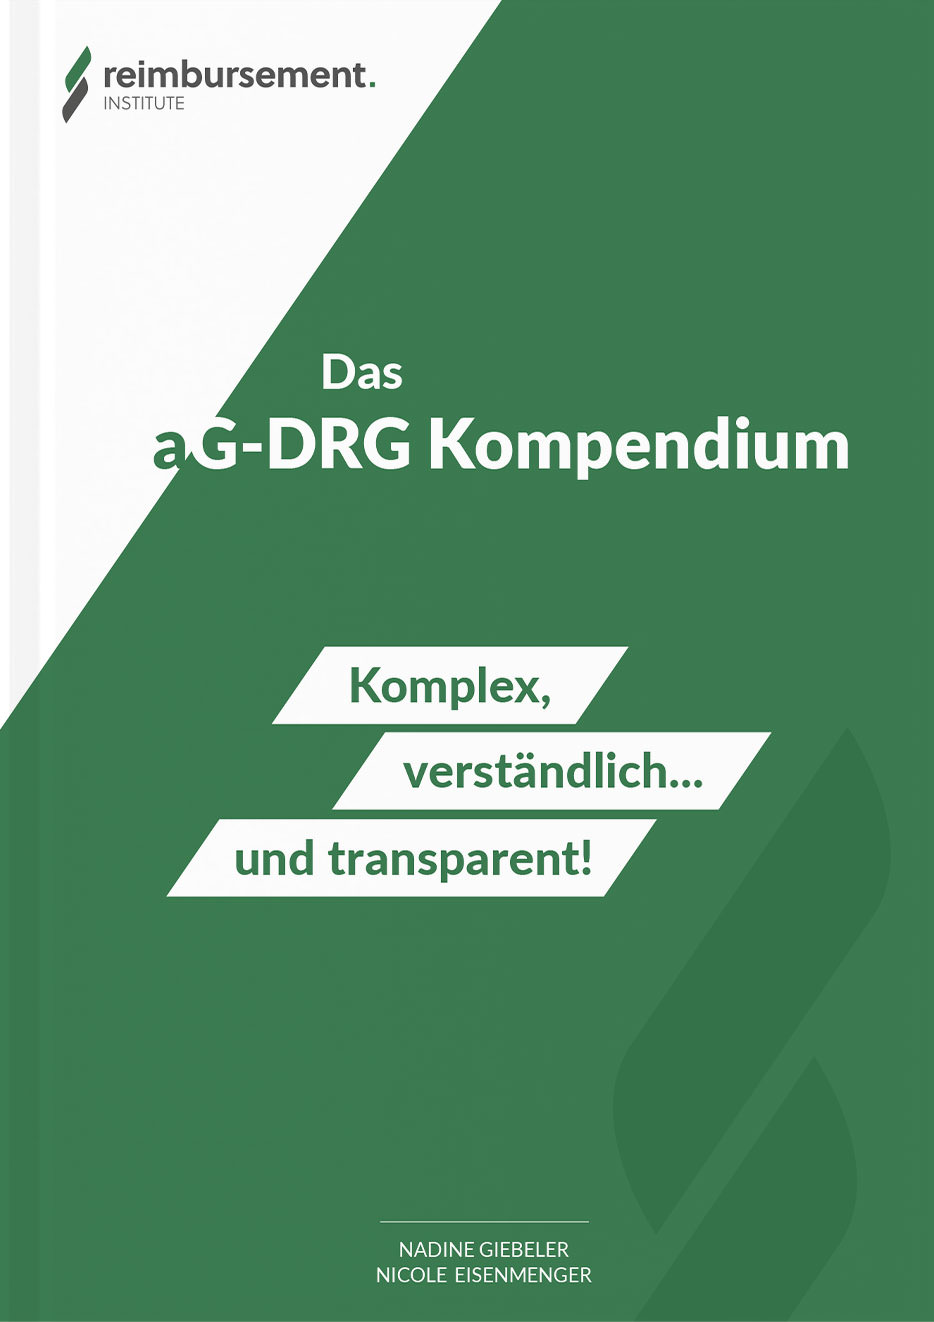 Das aG-DRG Kompendium von Nadine Giebeler und Nicole Eisenmenger